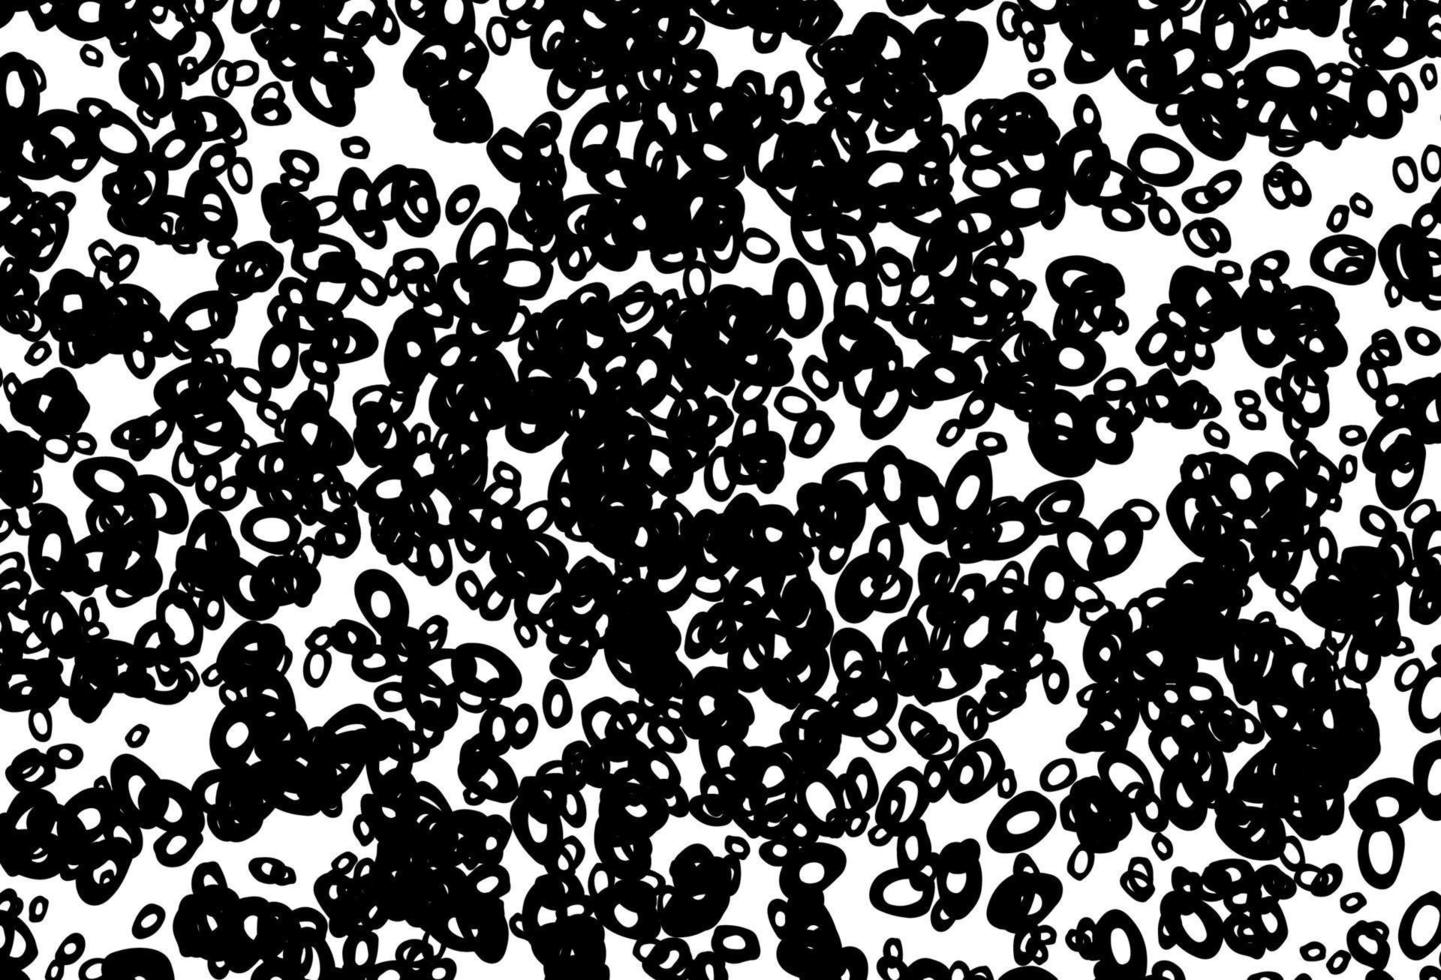 modelo de vetor preto e branco com círculos.